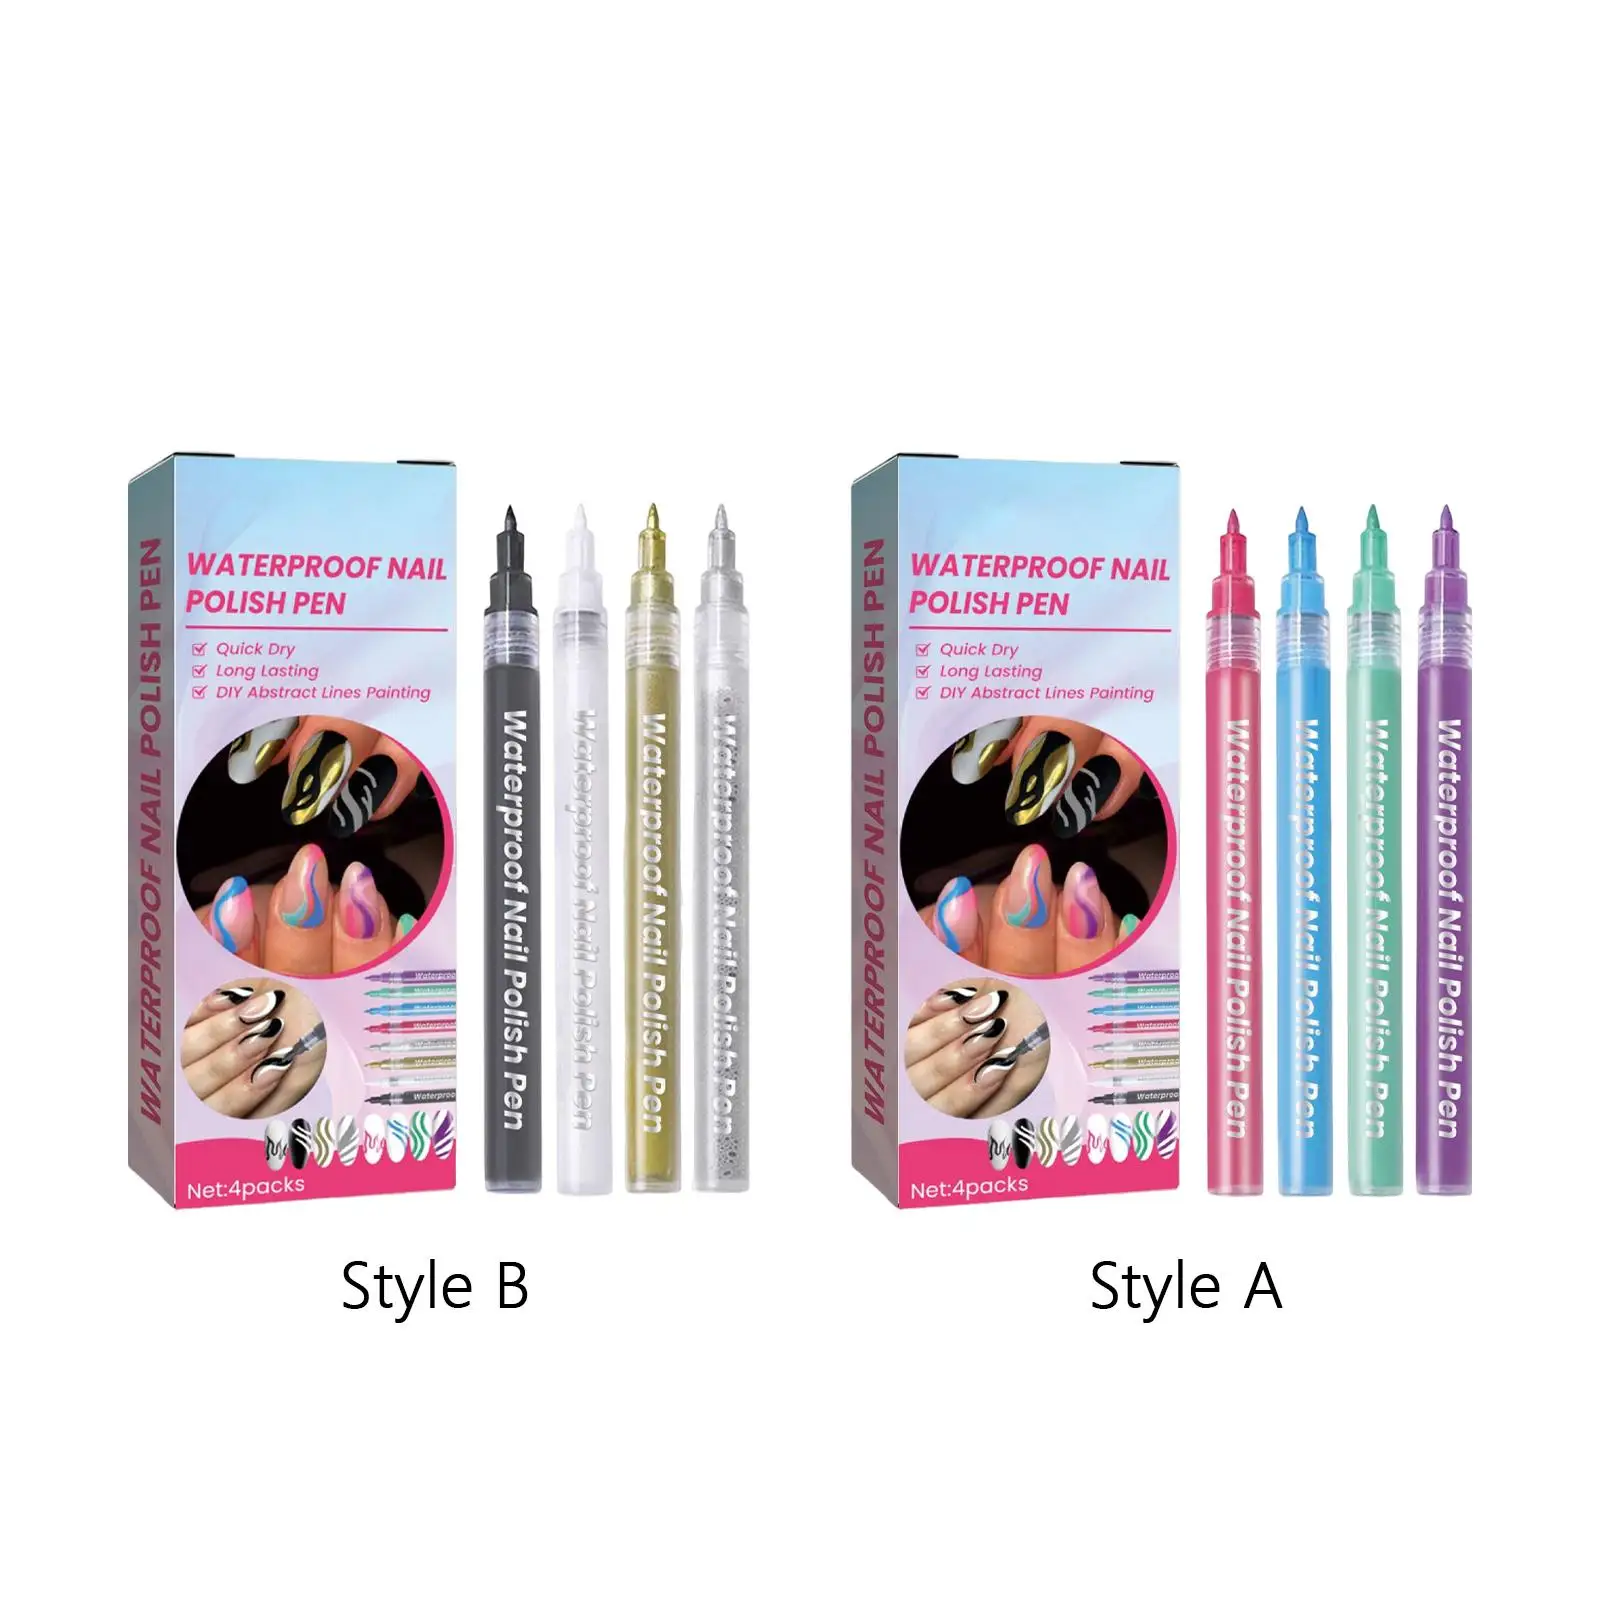 4x Waterproof Nail Polish Pen Nail Art Supplies Home Salon Use Drawing Painting Liner Nail Point Graffiti Dotting Pen